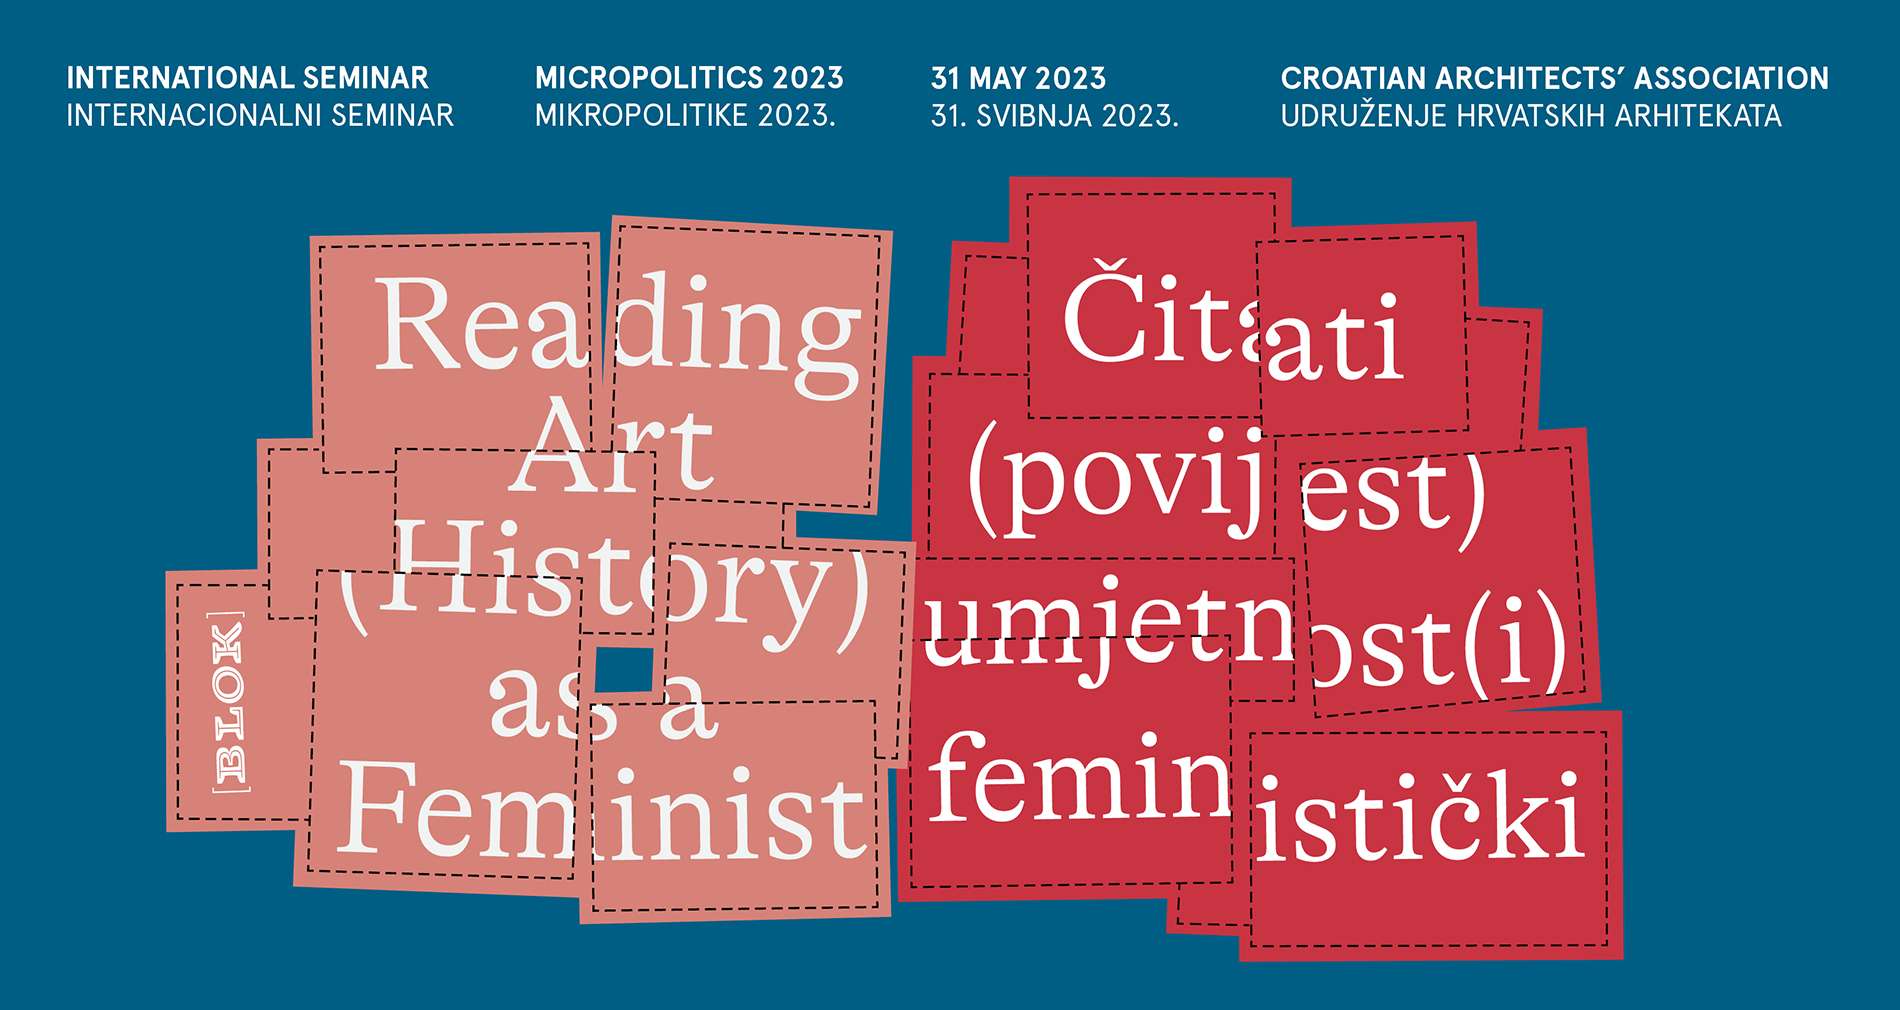 Mikropolitike 2023: Čitati (povijest) umjetnost(i) feministički